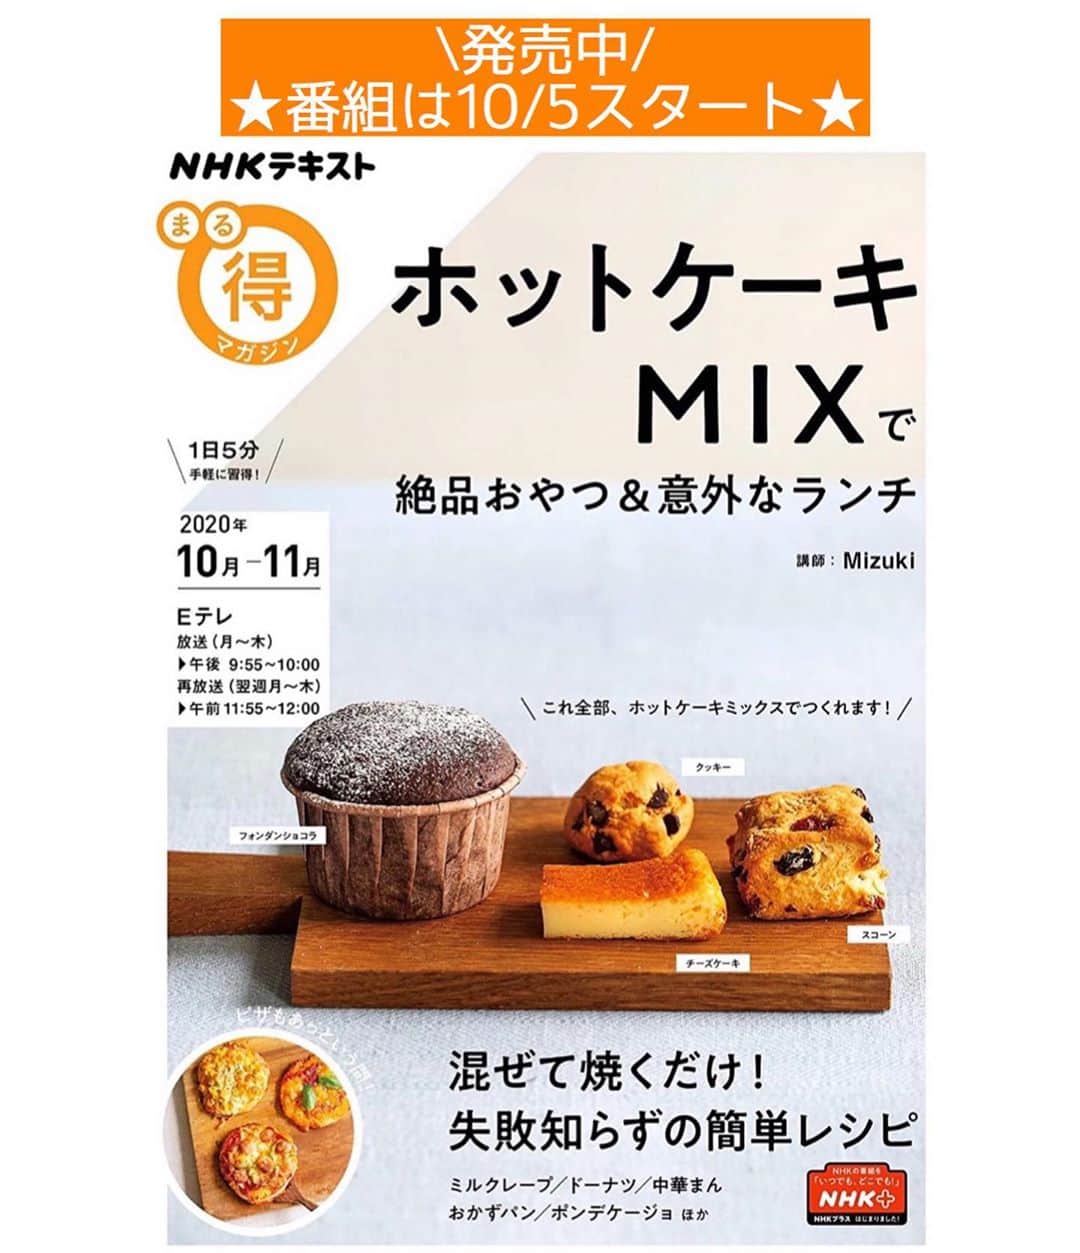 Mizuki【料理ブロガー・簡単レシピ】さんのインスタグラム写真 - (Mizuki【料理ブロガー・簡単レシピ】Instagram)「・﻿ 【#レシピ 】ーーーーーーーーーーーーー﻿ ♡じゃがいものカレーそぼろあんかけ♡﻿ (2品献立提案あり)﻿ ーーーーーーーーーーーーーーーーーーー﻿ ﻿ ﻿ ﻿ おはようございます(*^^*)﻿ ﻿ 今日ご紹介させていただくのは﻿ \じゃがいものカレーそぼろあんかけ/﻿ ホックホクのじゃがいもと﻿ 甘辛カレーあんが好相性の﻿ ごはんがすすむおかずです♡﻿ しかもコスパ抜群で﻿ しっかり食べ応えもありますよ〜♩﻿ ﻿ 作り方は超簡単(*´艸`)﻿ さっと炒めて煮るだけ！！﻿ ﻿ お鍋ひとつでできるので﻿ よかったらお試し下さいね(*^^*)﻿ ﻿ ﻿ ﻿ ＿＿＿＿＿＿＿＿＿＿＿＿＿＿＿＿＿＿＿＿﻿ 【2人分】﻿ じゃがいも...2個(300g)﻿ 豚ひき肉...100g﻿ ごま油...小1﻿ カレー粉...小1﻿ ●水...250ml﻿ ●酒・砂糖...各大1﻿ ●醤油...大1.5﻿ 片栗粉...小2﻿ (あれば)万能ねぎ...適量﻿ ﻿ 1.じゃがいもは3cm大に切る。片栗粉は水大1(分量外)で溶き、水溶き片栗粉を作っておく。﻿ 2.小鍋にごま油を中火で熱してひき肉を炒める。色が変わったらじゃがいもとカレー粉を加えて更に1分炒める。﻿ 3.●を加えて混ぜ、煮立ったらフタをずらして乗せ、弱めの中火で10分煮る。﻿ 4.じゃがいもが柔らかくなったら弱火にし、水溶き片栗粉を加えてとろみをつける。器に盛り、斜め切りにしたねぎを乗せる。﻿ ￣￣￣￣￣￣￣￣￣￣￣￣￣￣￣￣￣￣￣￣﻿ ﻿ ﻿ ﻿ 《ポイント》﻿ ♦︎水溶き片栗粉を加えたらすぐにとろみがつくので手早く混ぜて下さい♩﻿ ♦︎じゃがいもの種類によっては煮込み時間を調節して下さい♩今回は男爵いもを使用しています♩﻿ ﻿ ﻿ ﻿ ﻿ ﻿ ＿＿＿＿＿＿＿＿＿＿＿＿＿＿＿﻿ 🥣🥣🥣2品献立提案🥣🥣🥣﻿ ￣￣￣￣￣￣￣￣￣￣￣￣￣￣￣﻿ 【合間に作れるおすすめ副菜】﻿ >ブロッコリーと卵のおかかマヨ和え(P.100)﻿ >エリンギとベーコンのコンソメバター(P.95)﻿ (#Mizukiの2品献立 より)﻿ ﻿ 【献立の段取り】﻿ メインを火にかけてから、副菜にとりかかる🥢﻿ ﻿ ﻿ ﻿ ﻿ ﻿ ﻿ 【⭐️発売中⭐️】﻿ _____________________________________﻿ \15分でいただきます/﻿ 📕#Mizukiの2品献立 📕﻿ (9月24日発売・マガジンハウス)﻿ ￣￣￣￣￣￣￣￣￣￣￣￣￣￣￣￣￣﻿ ﻿ 忙しい私たちには﻿ 2品くらいがちょうどいい！﻿ 『しんどくない献立、考えました』﻿ ￣￣￣￣￣￣￣￣￣￣￣￣￣￣￣￣﻿ ﻿ ーーーーーPART.1 ーーーーー﻿ 【Mizukiのお墨つき！２品献立ベスト10】﻿ 約15分でできる10献立をご紹介！﻿ メインは全部フライパン、副菜はレンチンor混ぜるだけ♡﻿ ﻿ ーーーーーPART.2 ーーーーー﻿ 【フライパンひとつ！今夜のメインおかず】﻿ 献立の主役になる肉や魚のおかず50品！﻿ Part3の副菜と組み合わせれば﻿ 献立のバリエーションが広がりますよ♩﻿ ﻿ ーーーーー PART.3 ーーーーー﻿ 【合間に作れる！ 野菜別かんたん副菜】﻿ レンチンor和えるだけの副菜レシピを﻿ 素材別にたっぷり収録♩﻿ ﻿ ーーーーー番外編ーーーーー﻿ 【ひとつで満足！ご飯＆麺】﻿ 【具だくさん！おかずスープ】﻿ 【オーブンいらずのおやつレシピ】﻿ ￣￣￣￣￣￣￣￣￣￣￣￣￣￣￣￣￣￣﻿ (ハイライトにリンク🔗あります💗)﻿ ﻿ ﻿ ﻿ ﻿ ＿＿＿＿＿＿＿＿＿＿＿＿＿＿＿＿＿＿﻿ 🔔テレビ出演のお知らせ🔔﻿ 10月5日より2週間(月〜木)﻿ 【NHK Eテレ #まる得マガジン 】に﻿ 講師として出演させていただきます☺️﻿ 俳優の武田航平さん﻿ (@kouhei_takeda.official )と一緒に﻿ 絶品おやつから意外なランチまで﻿ たくさん作らせていただきますよ♩﻿ ￣￣￣￣￣￣￣￣￣￣￣￣￣￣￣￣￣￣﻿ ﻿ ﻿ ﻿ ﻿ レシピを作って下さった際や﻿ レシピ本についてのご投稿には﻿ タグ付け( @mizuki_31cafe )して﻿ お知らせいただけると嬉しいです😊💕﻿ ﻿ ﻿ ﻿ ﻿ ﻿ #ひき肉#じゃがいも#あんかけ#カレー#Mizuki#簡単レシピ#時短レシピ#節約レシピ#料理#フーディーテーブル#マカロニメイト#おうちごはん#デリスタグラマー#料理好きな人と繋がりたい#食べ物#料理記録#おうちごはんlover#写真好きな人と繋がりたい#foodpic#cooking#recipe#lin_stagrammer#foodporn#yummy#f52grams#じゃがいものカレーそぼろあんかけm」9月30日 7時17分 - mizuki_31cafe